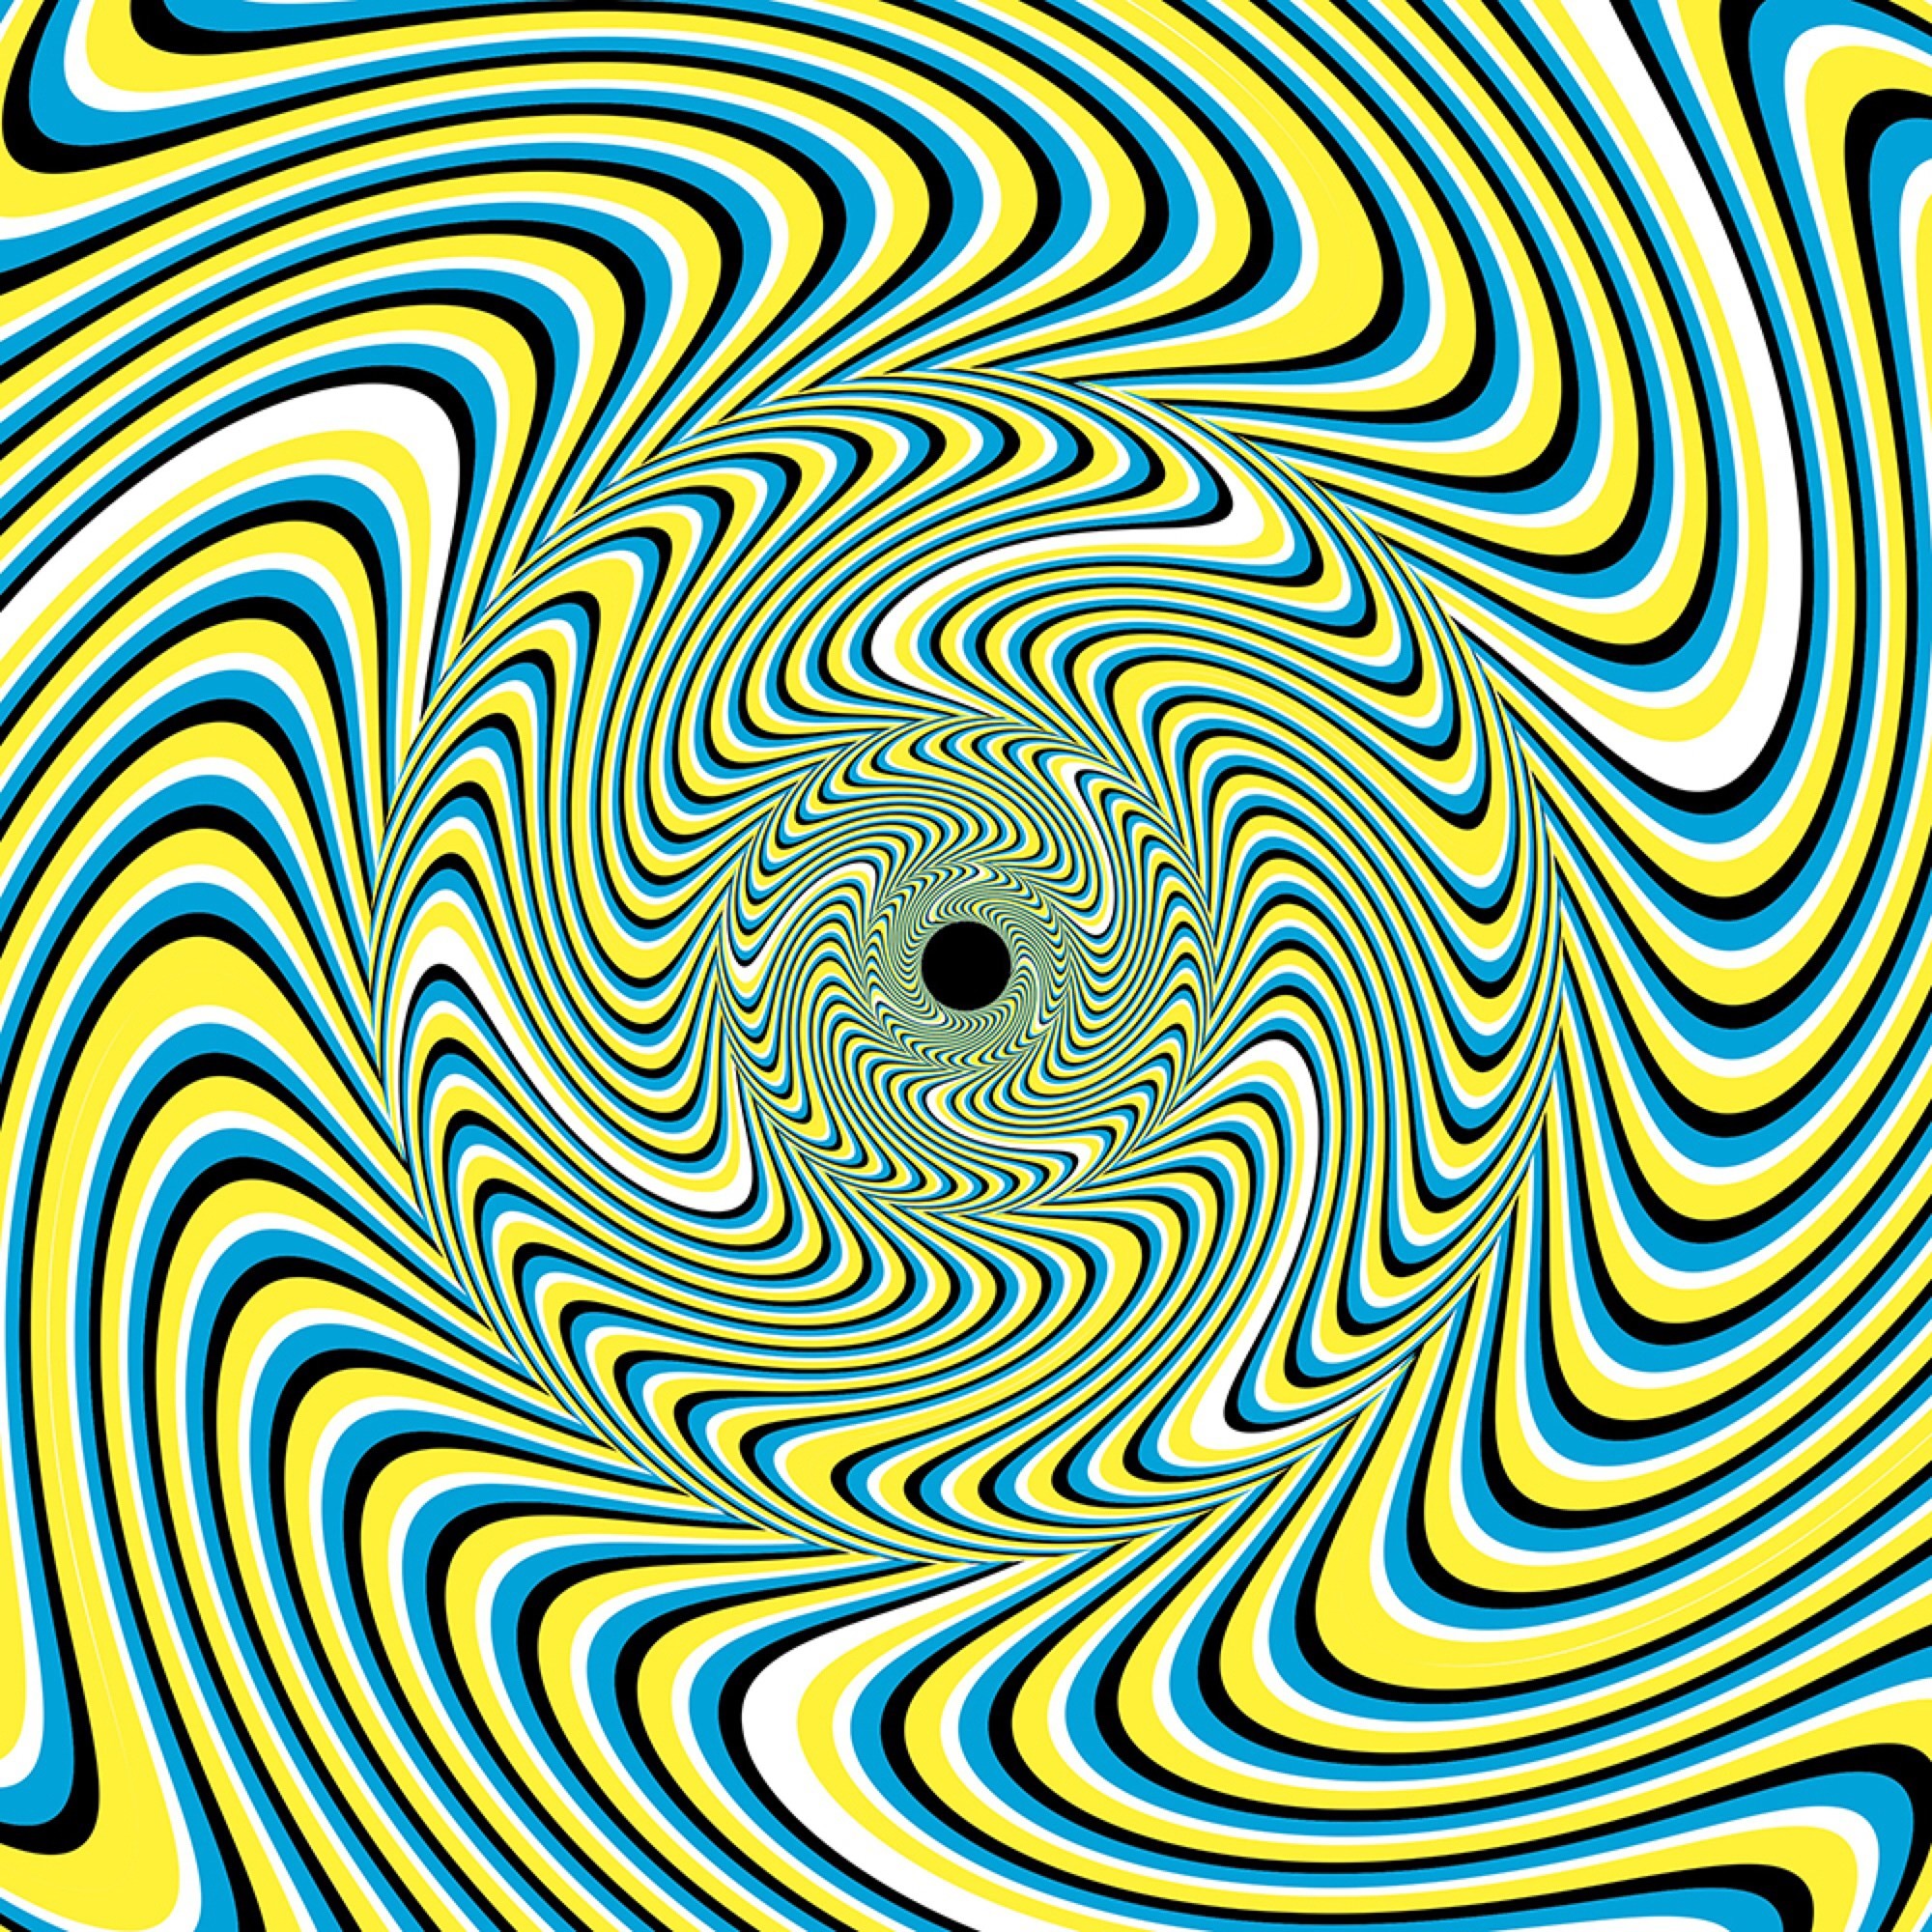 Движущиеся картинки для глаз. Эффект Рубичева-хольтона. Акиоши Китаока иллюзия. Визуальные иллюзии. Иллюзия движения.